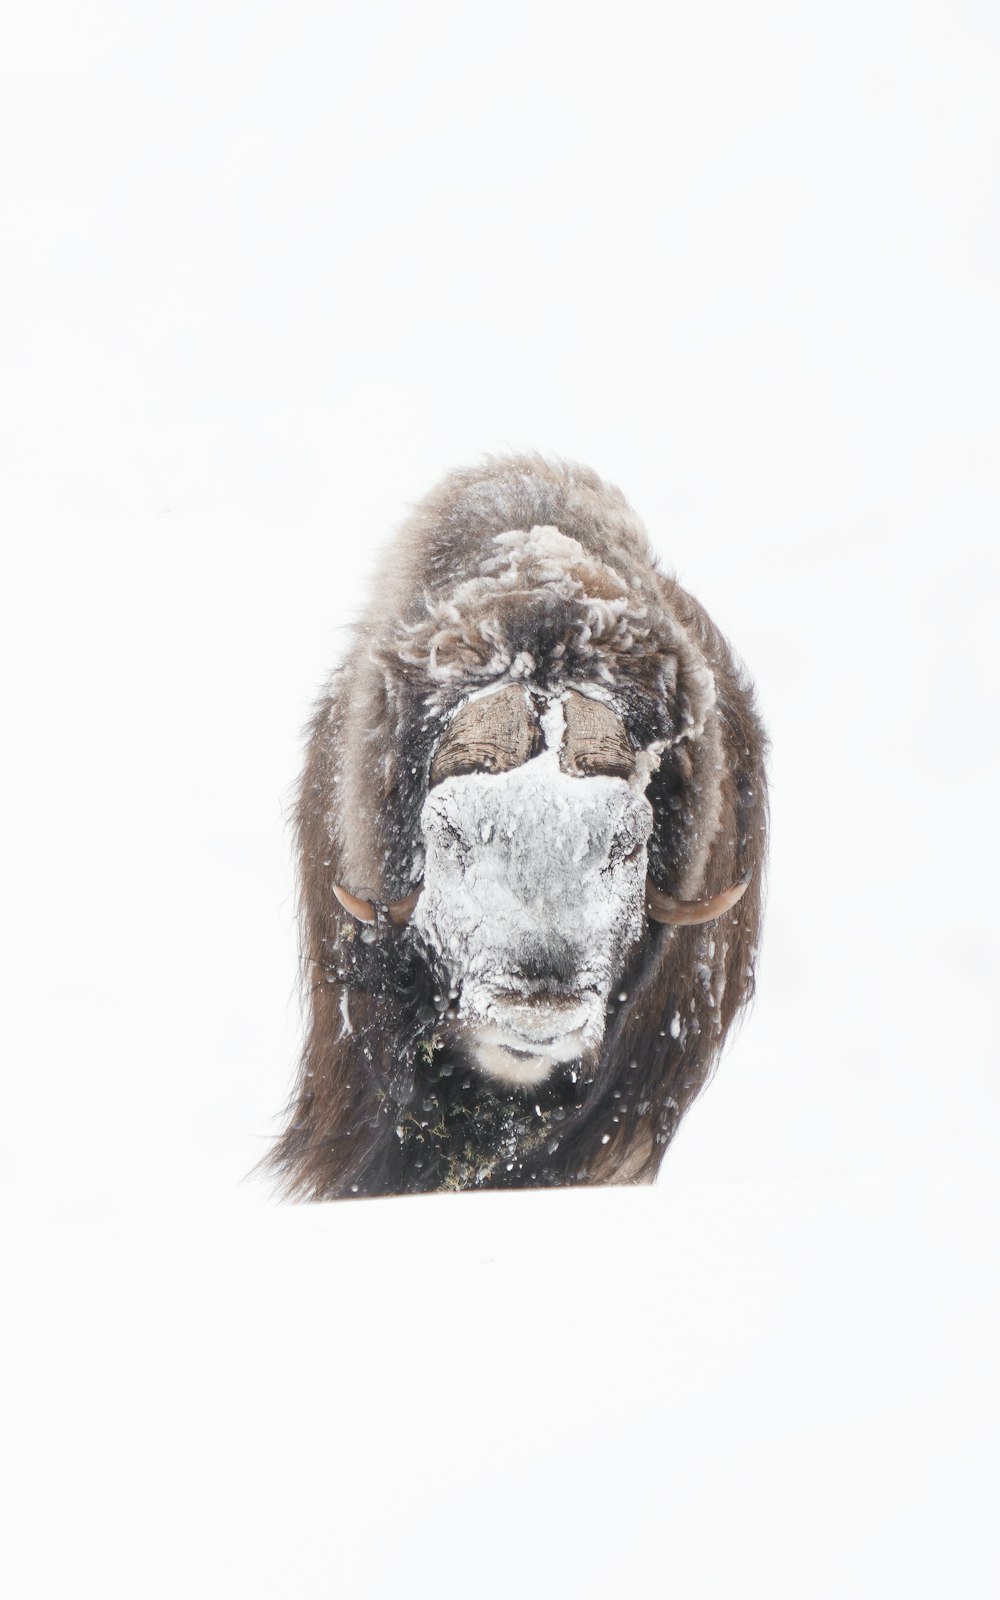 Un singe portant un masque dans la neige